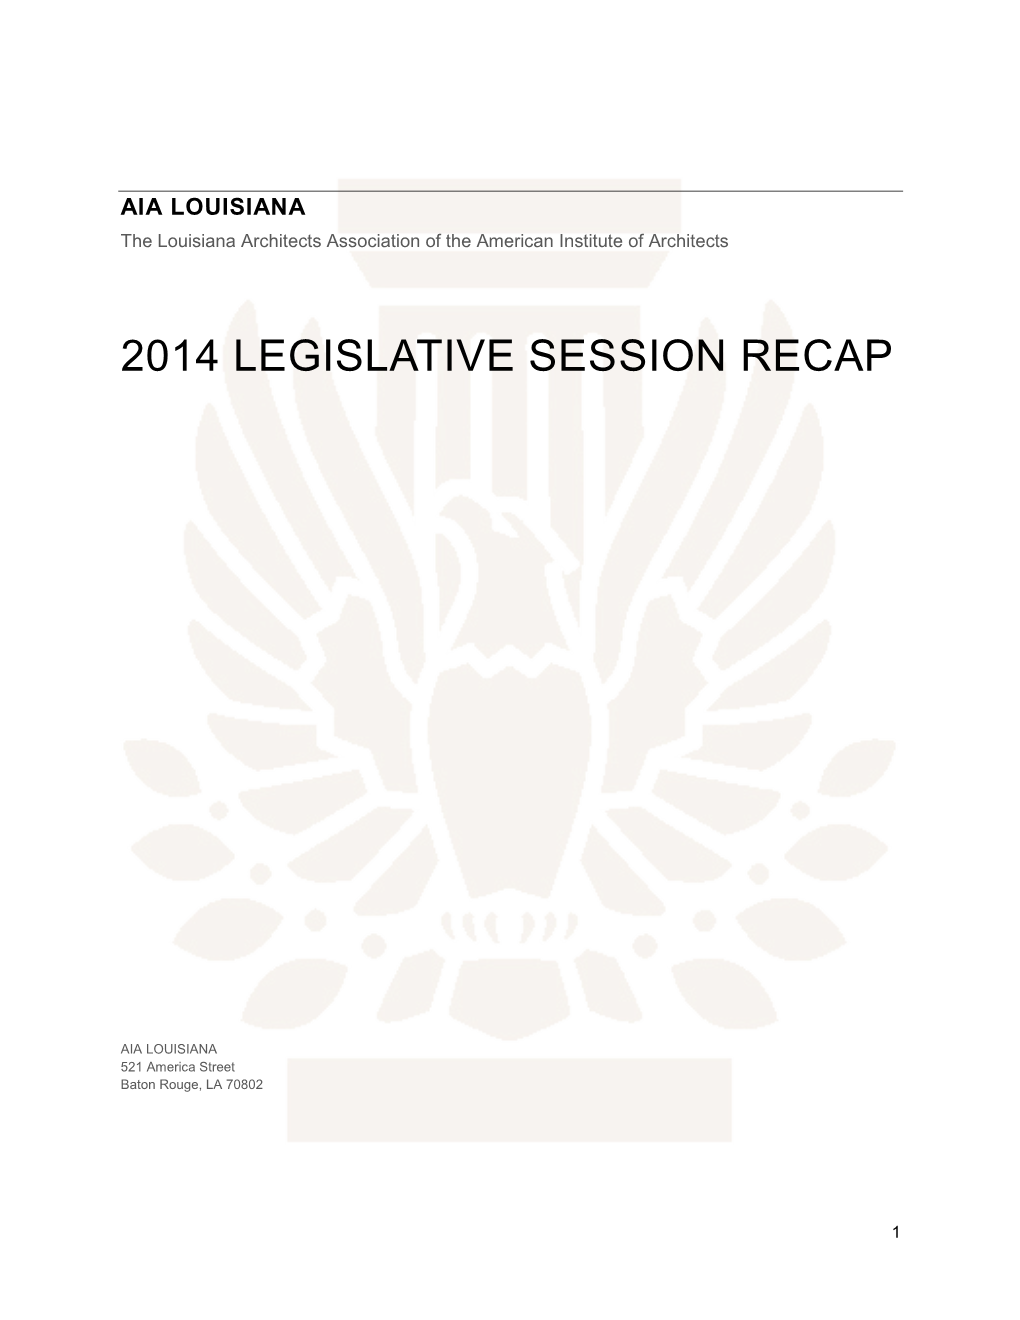 2014 Legislative Session Recap